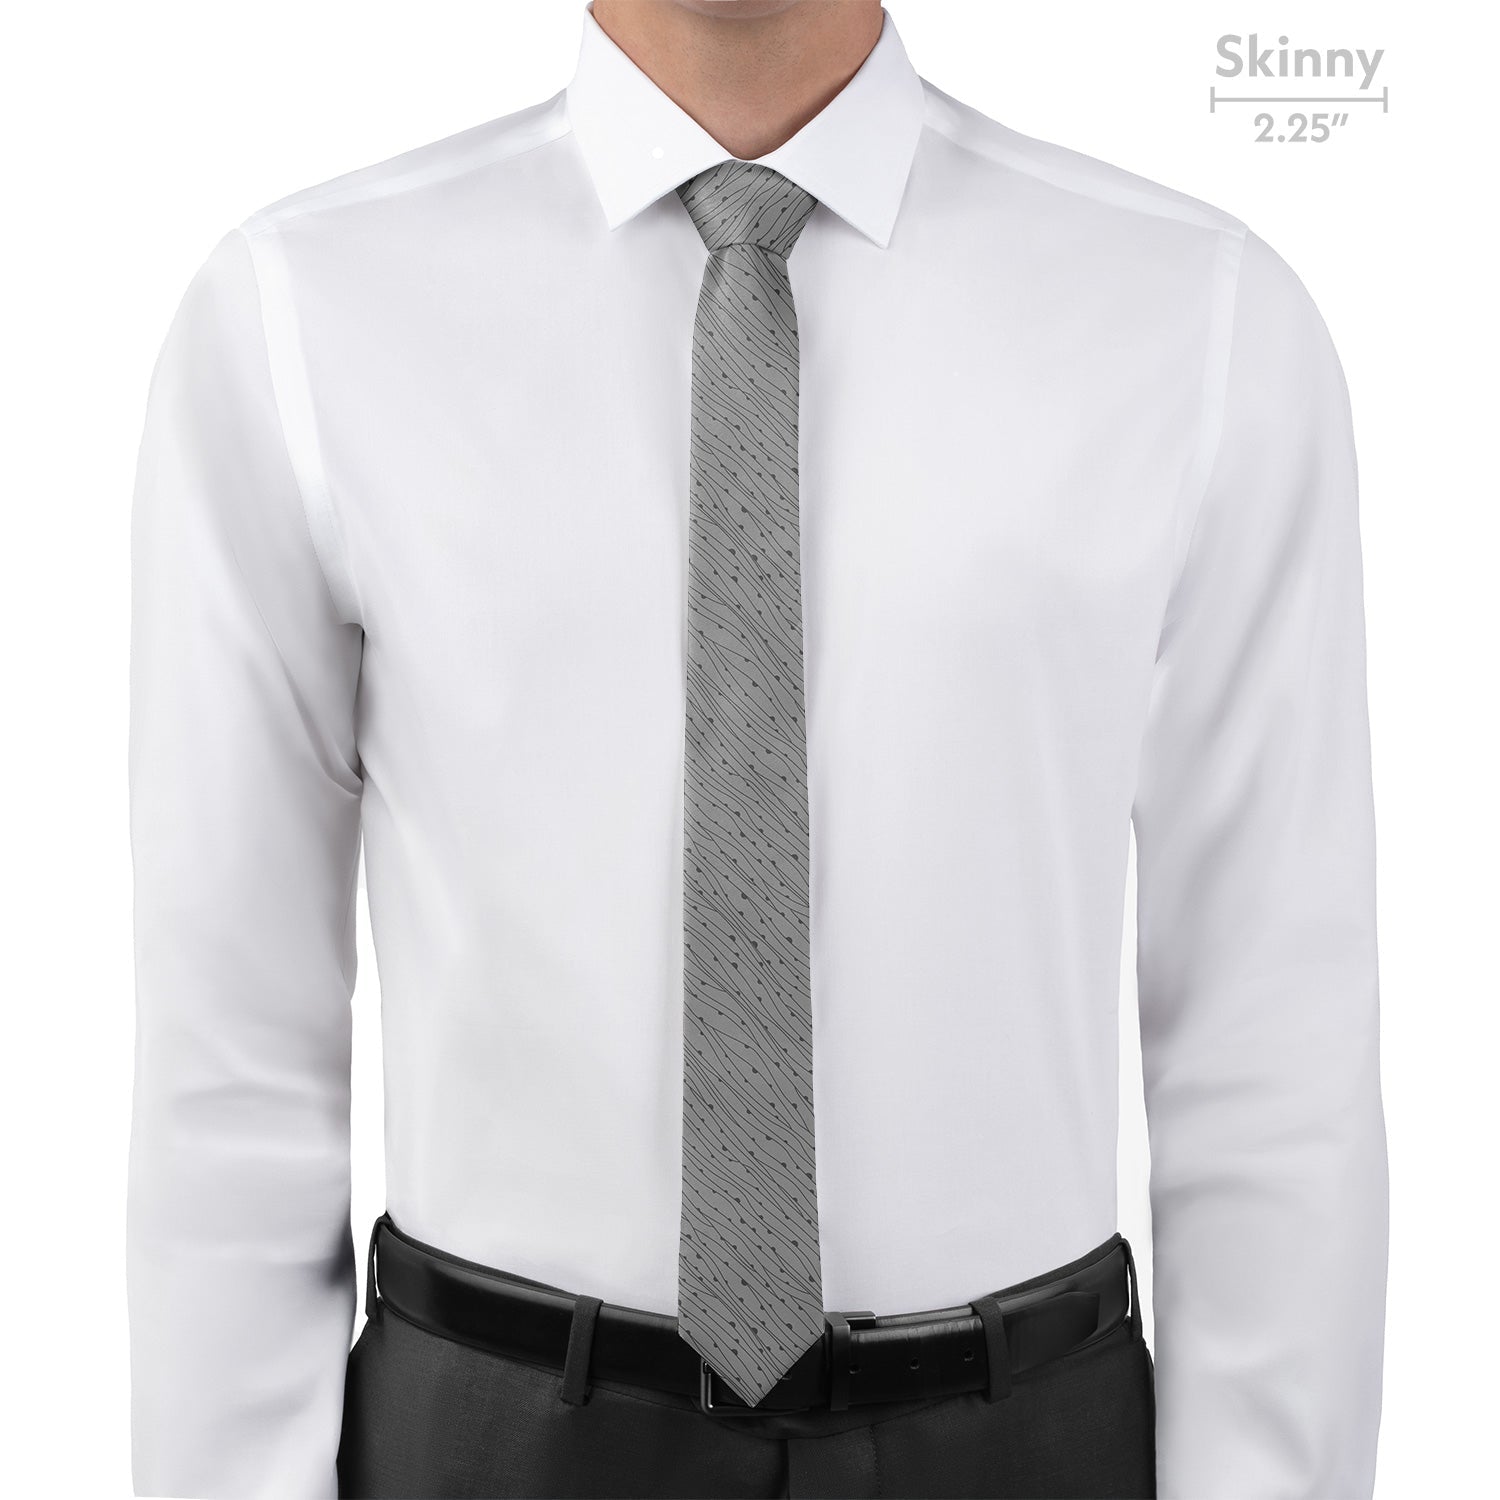 Reef Necktie - Skinny - Knotty Tie Co.